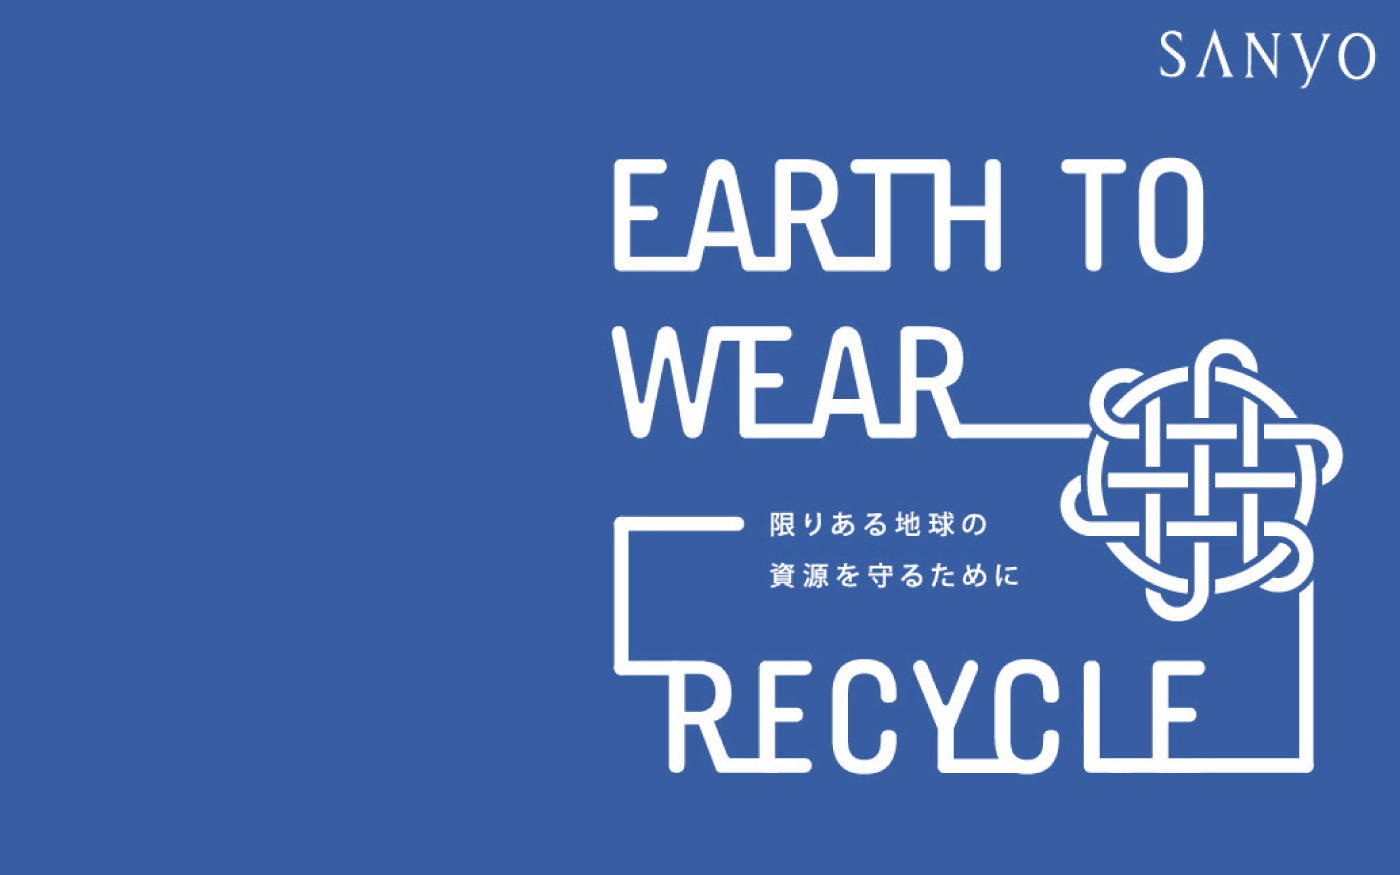 衣料品回収キャンペーン||『EARTH TO WEAR RECYCLE』|| 開催